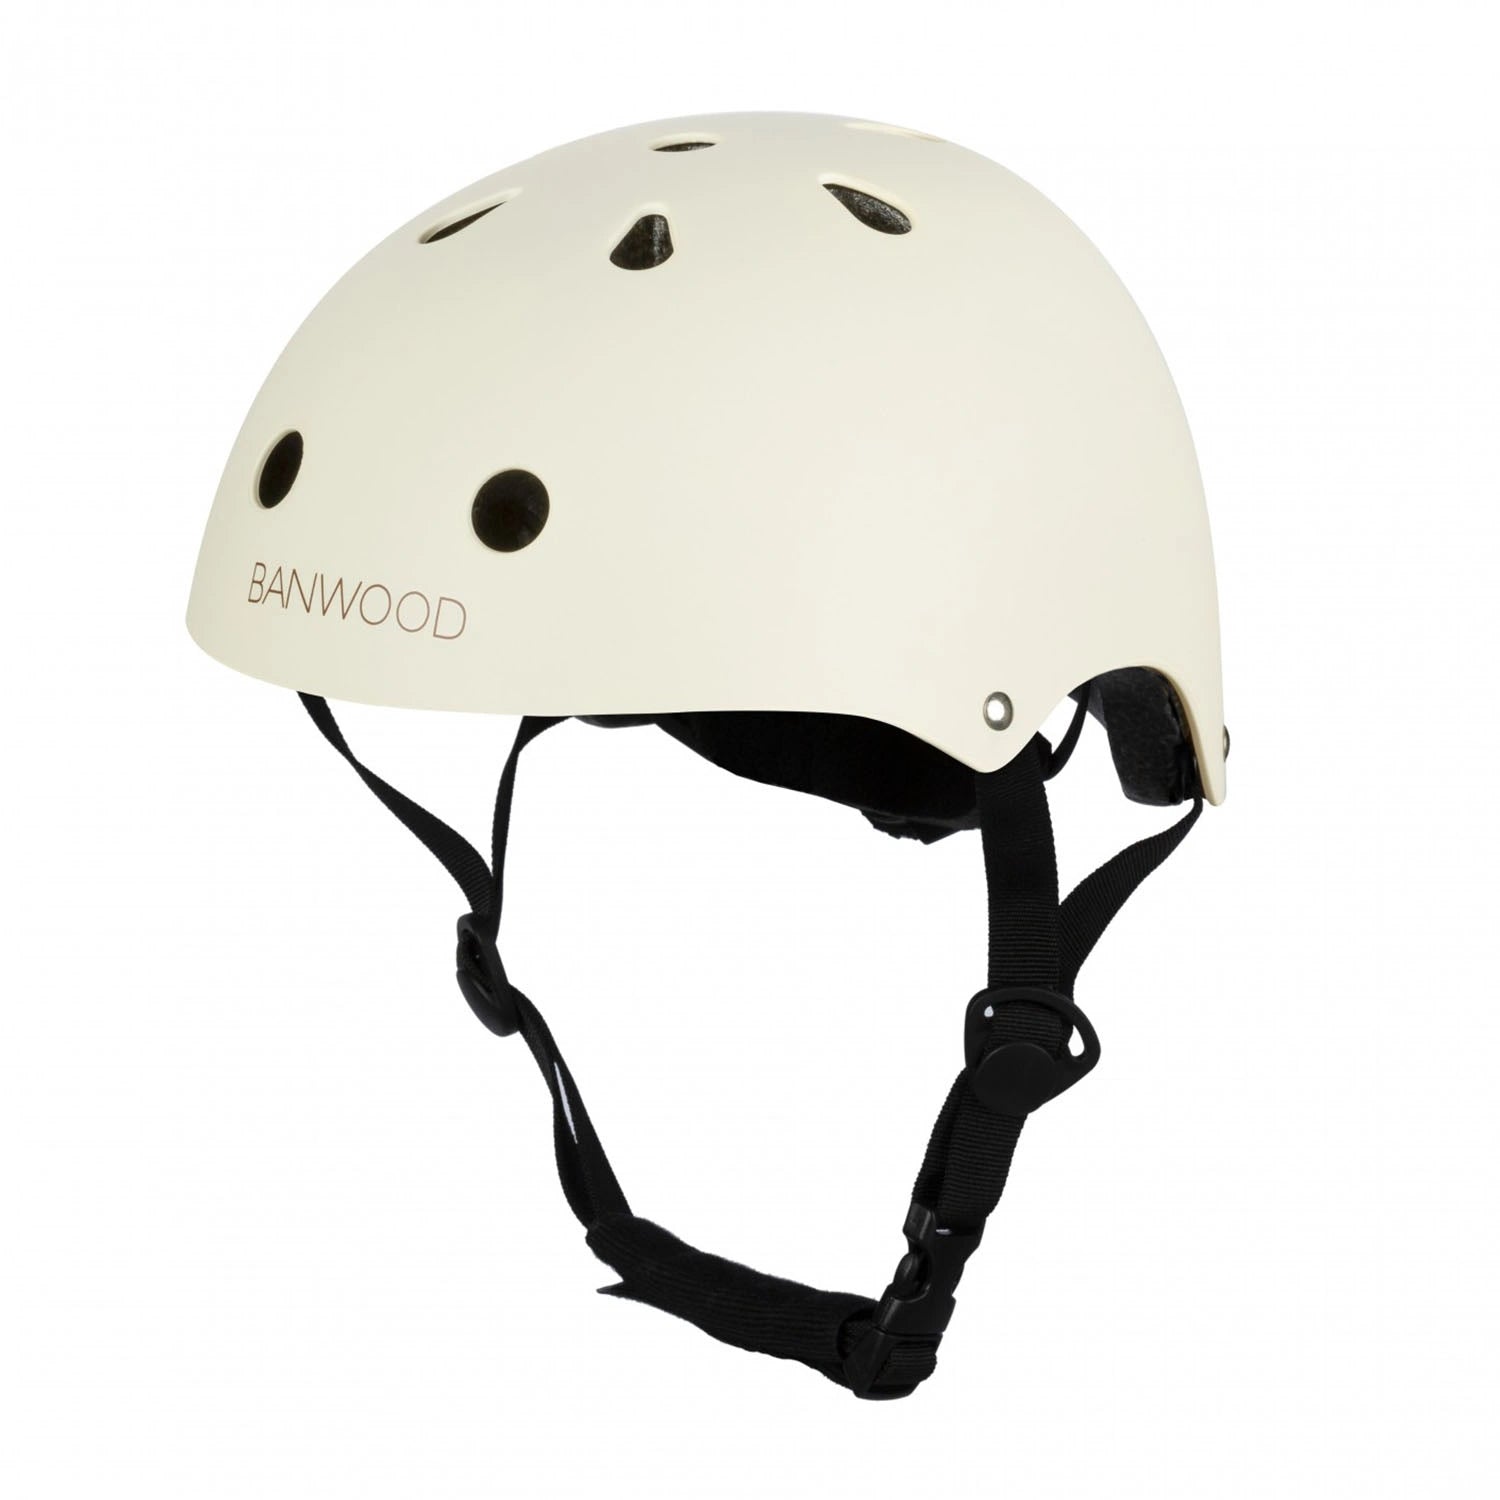 An image of Banwood Buy Banwood Classic Kids Bike Helmet – Safe & Stylish Cream